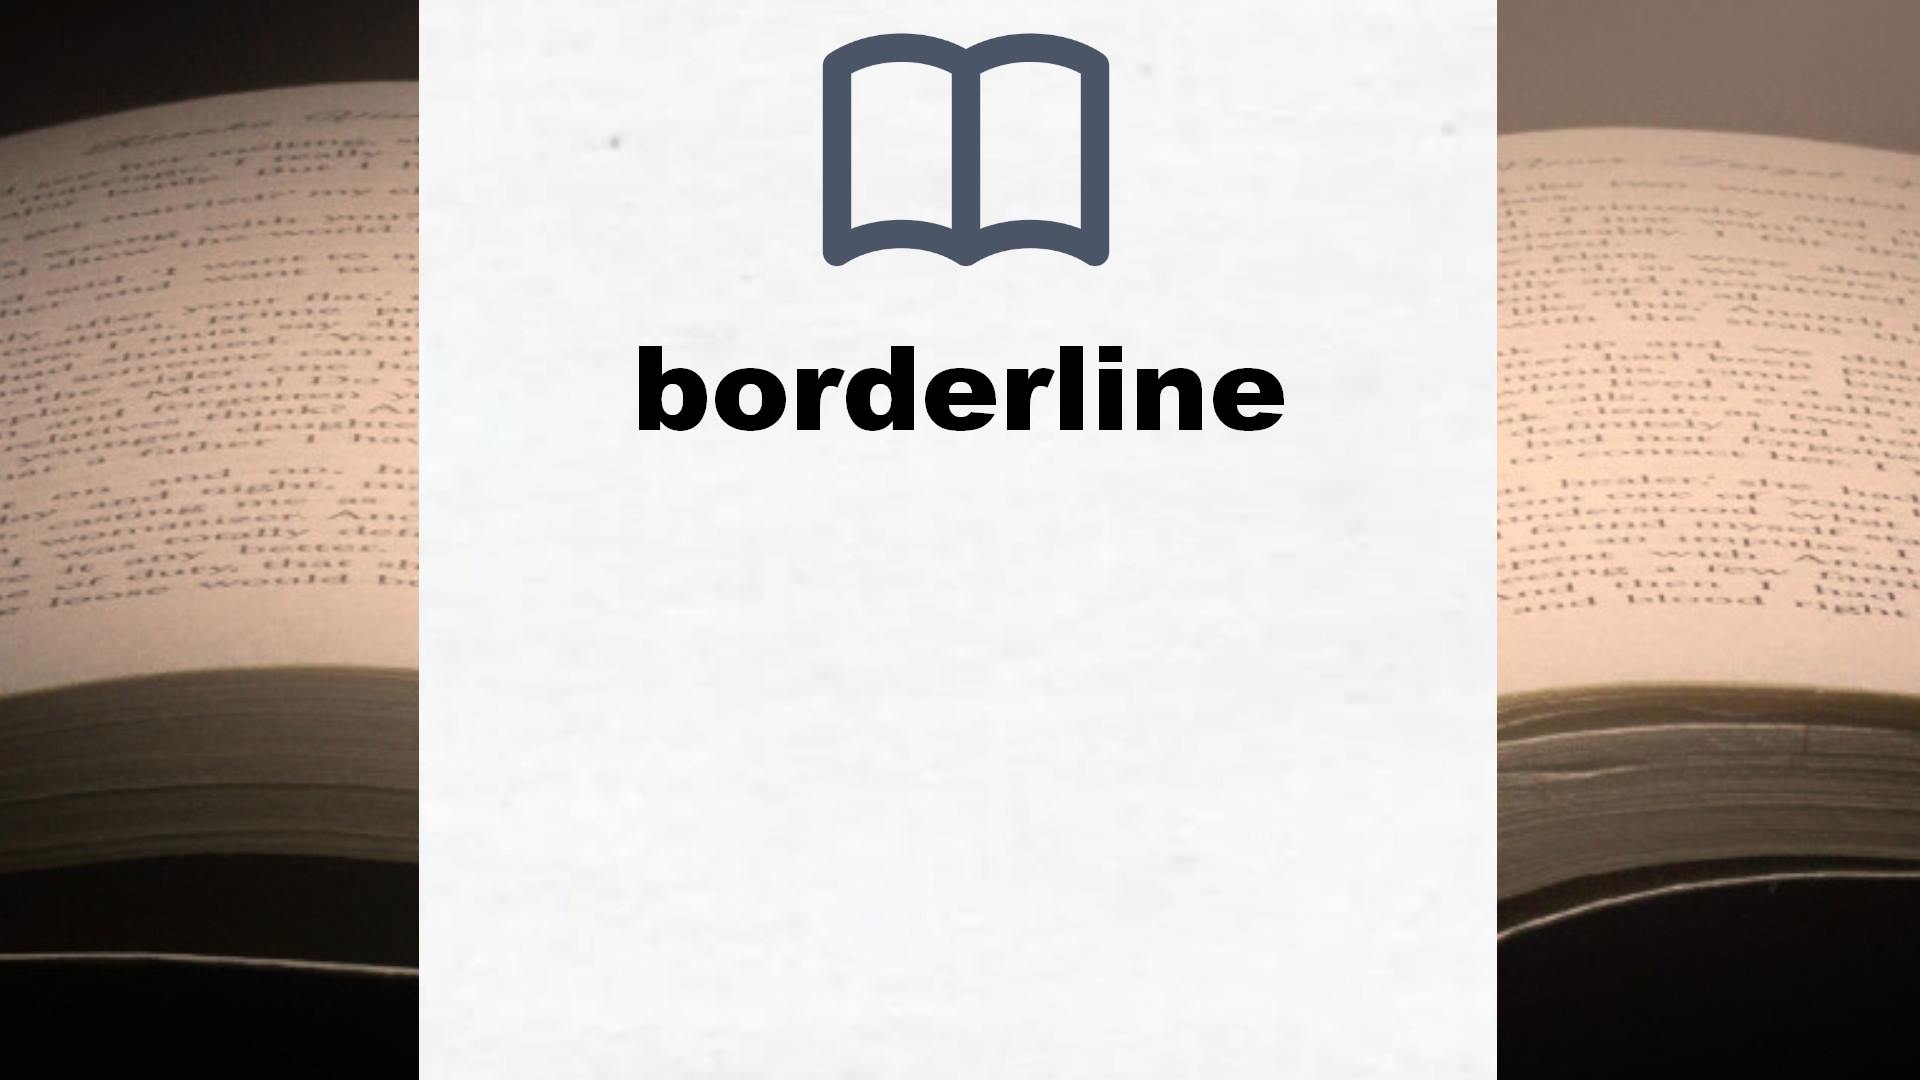 Libros sobre borderline